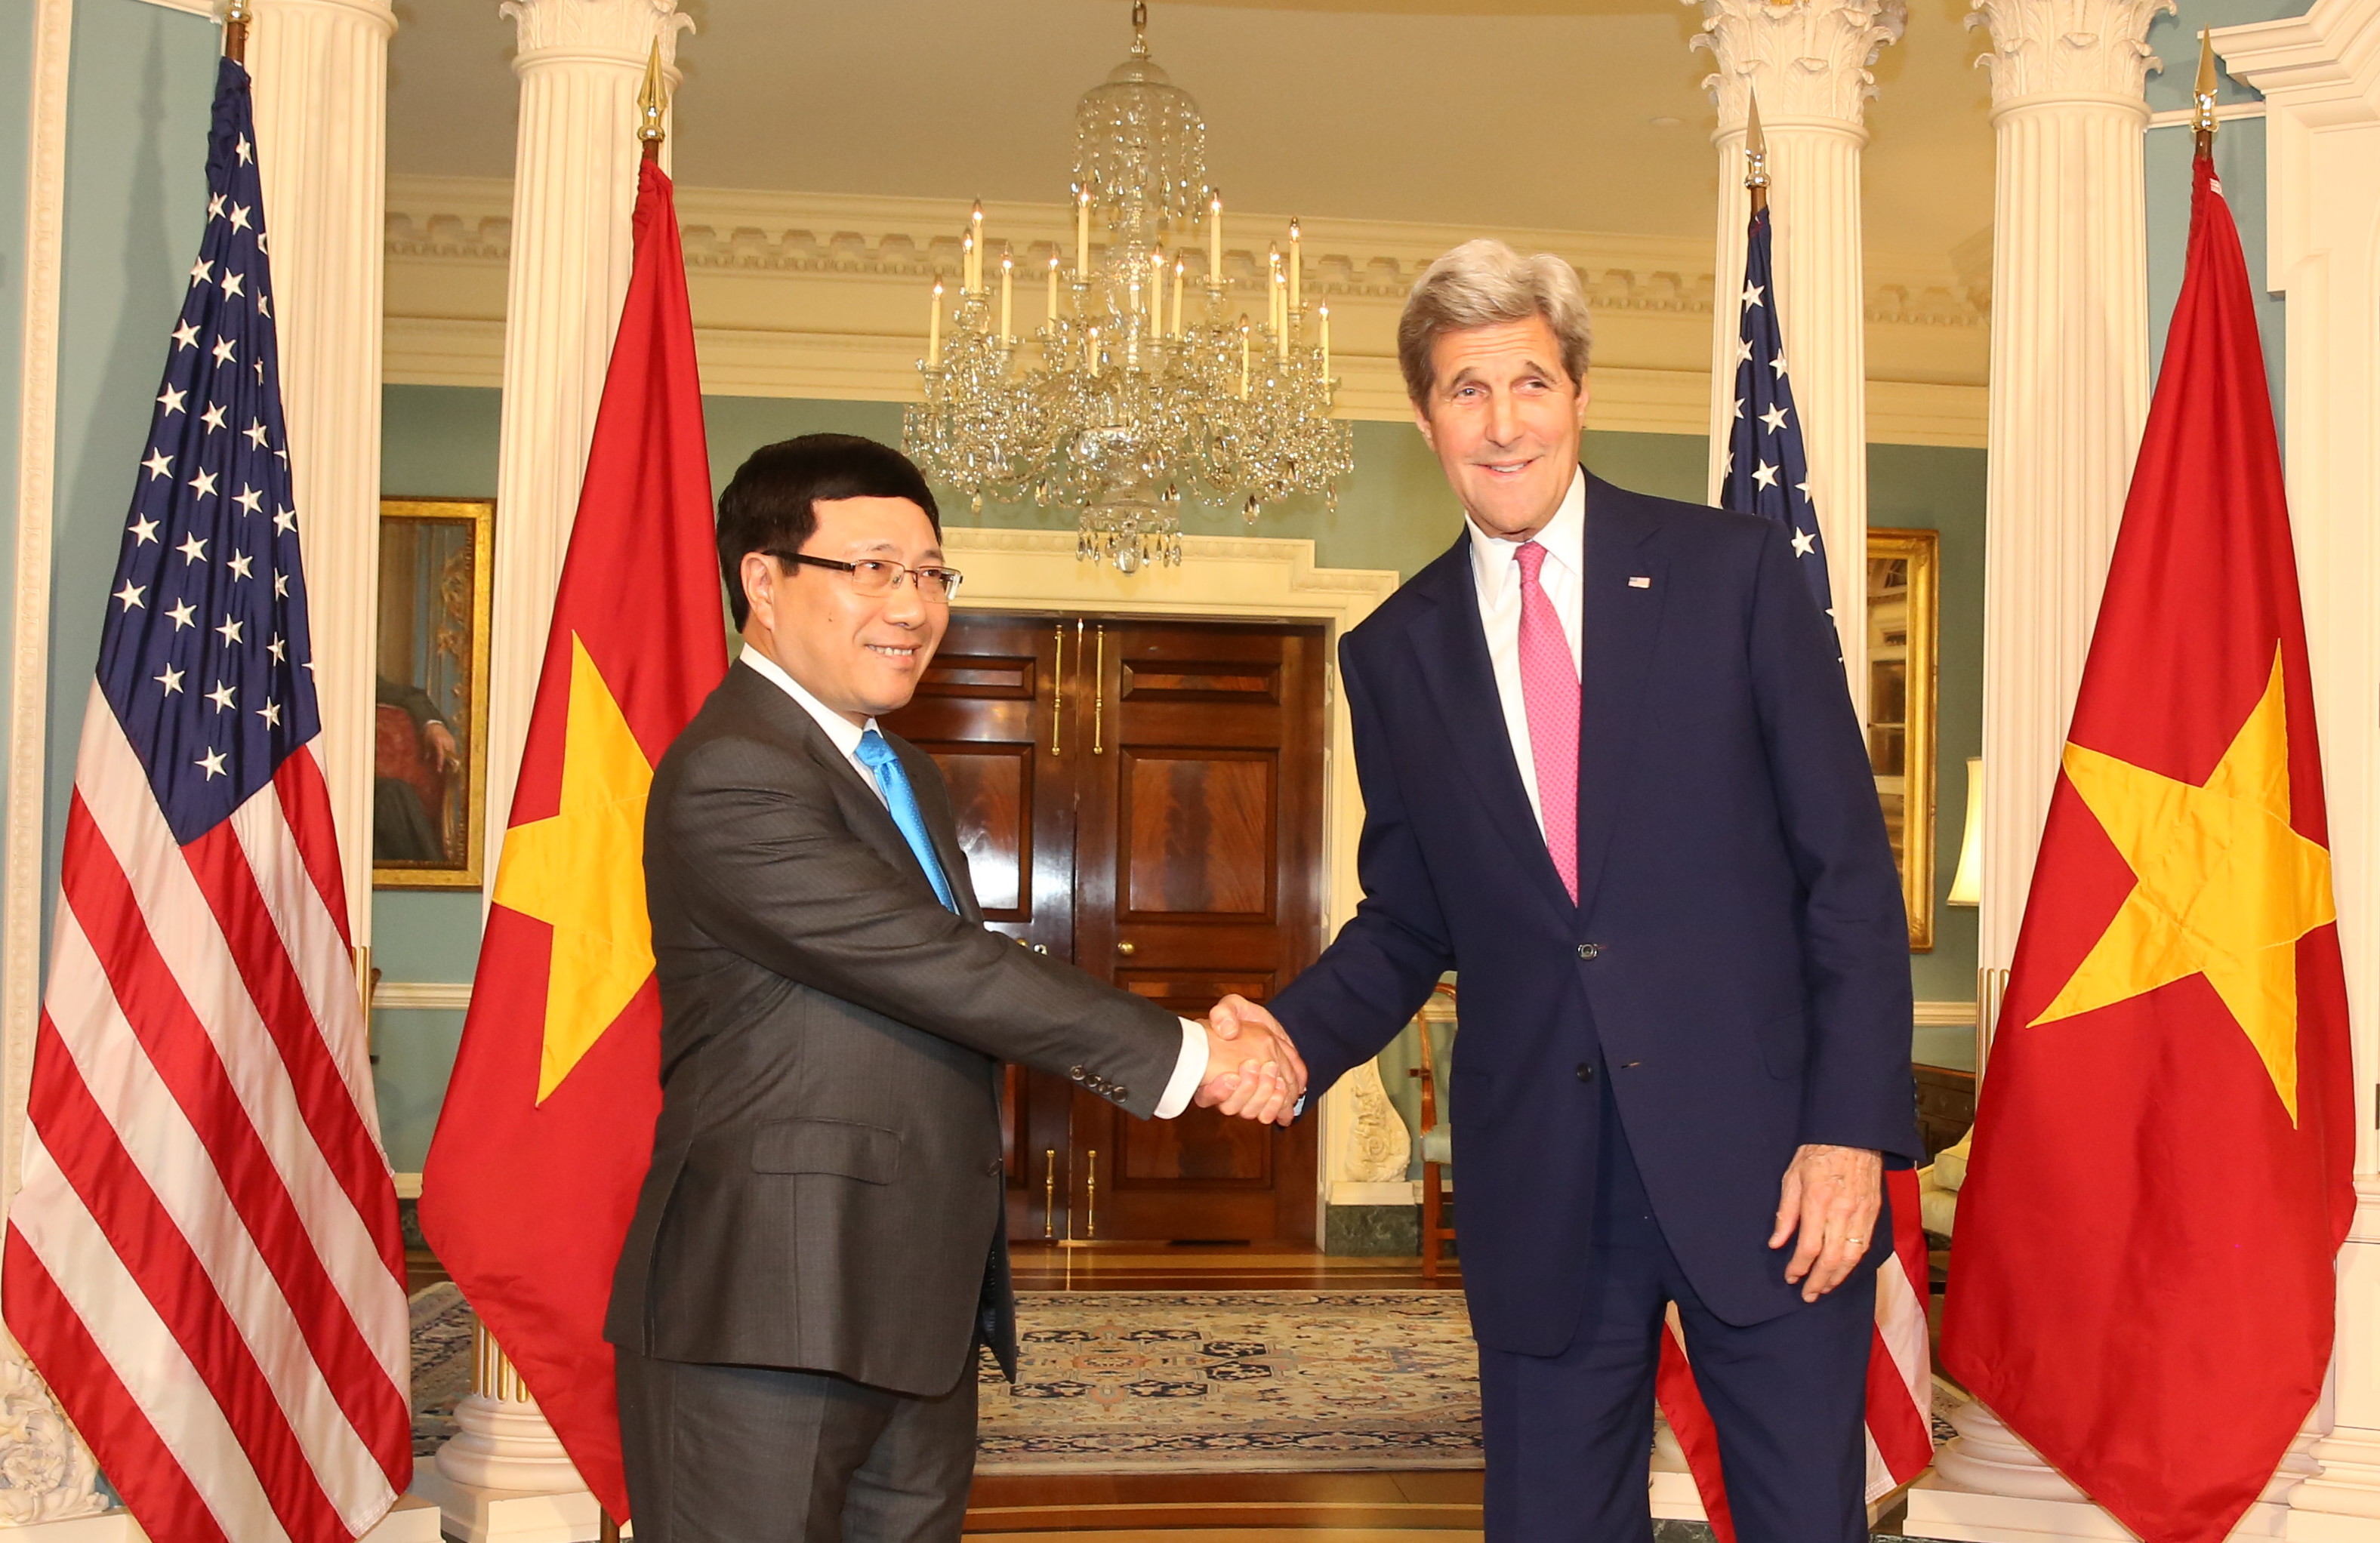 Hợp tác Việt Nam - Hoa Kỳ: Xem qua những hình ảnh về hợp tác Việt Nam - Hoa Kỳ, bạn sẽ cảm nhận được sự thân thiết, đoàn kết và tình cảm giữa hai nước. Điều này khiến bạn tin tưởng vào tương lai sáng lạn của quan hệ Việt Nam - Hoa Kỳ.